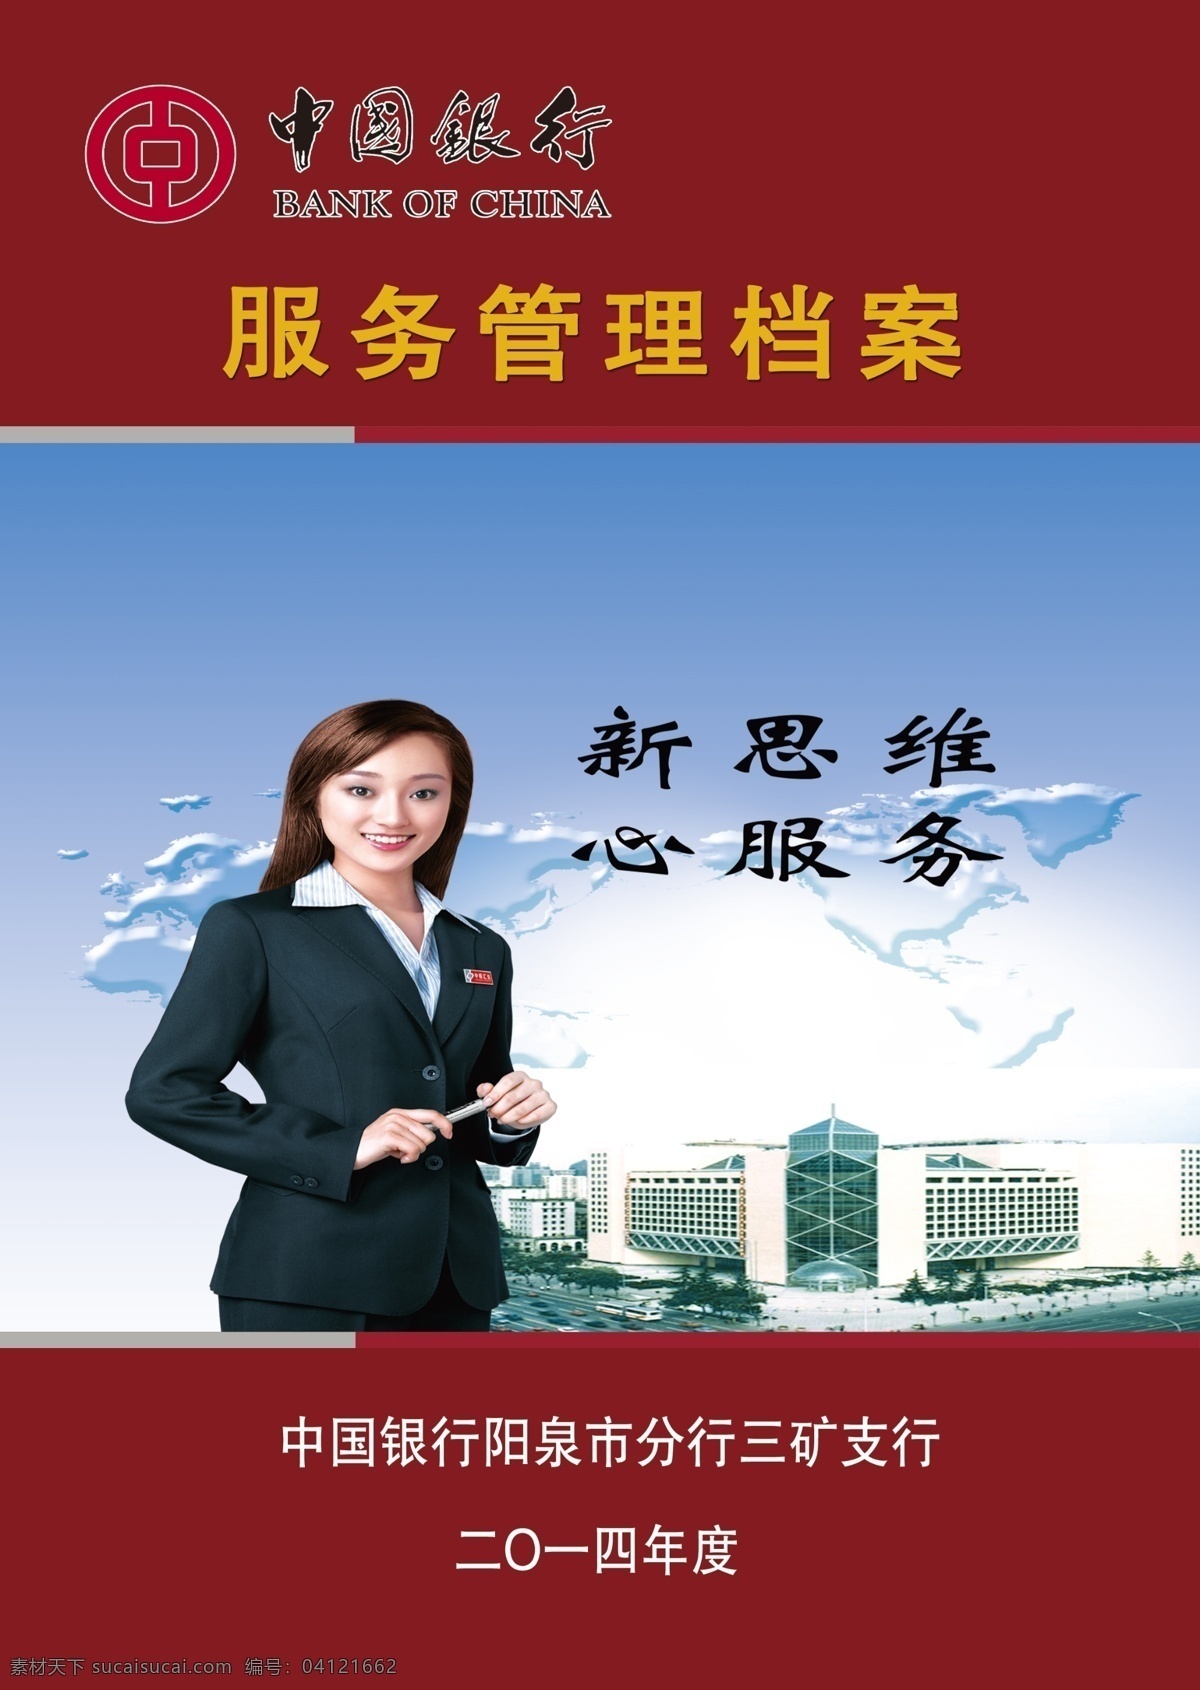 中国银行封面 中国银行 金融服务